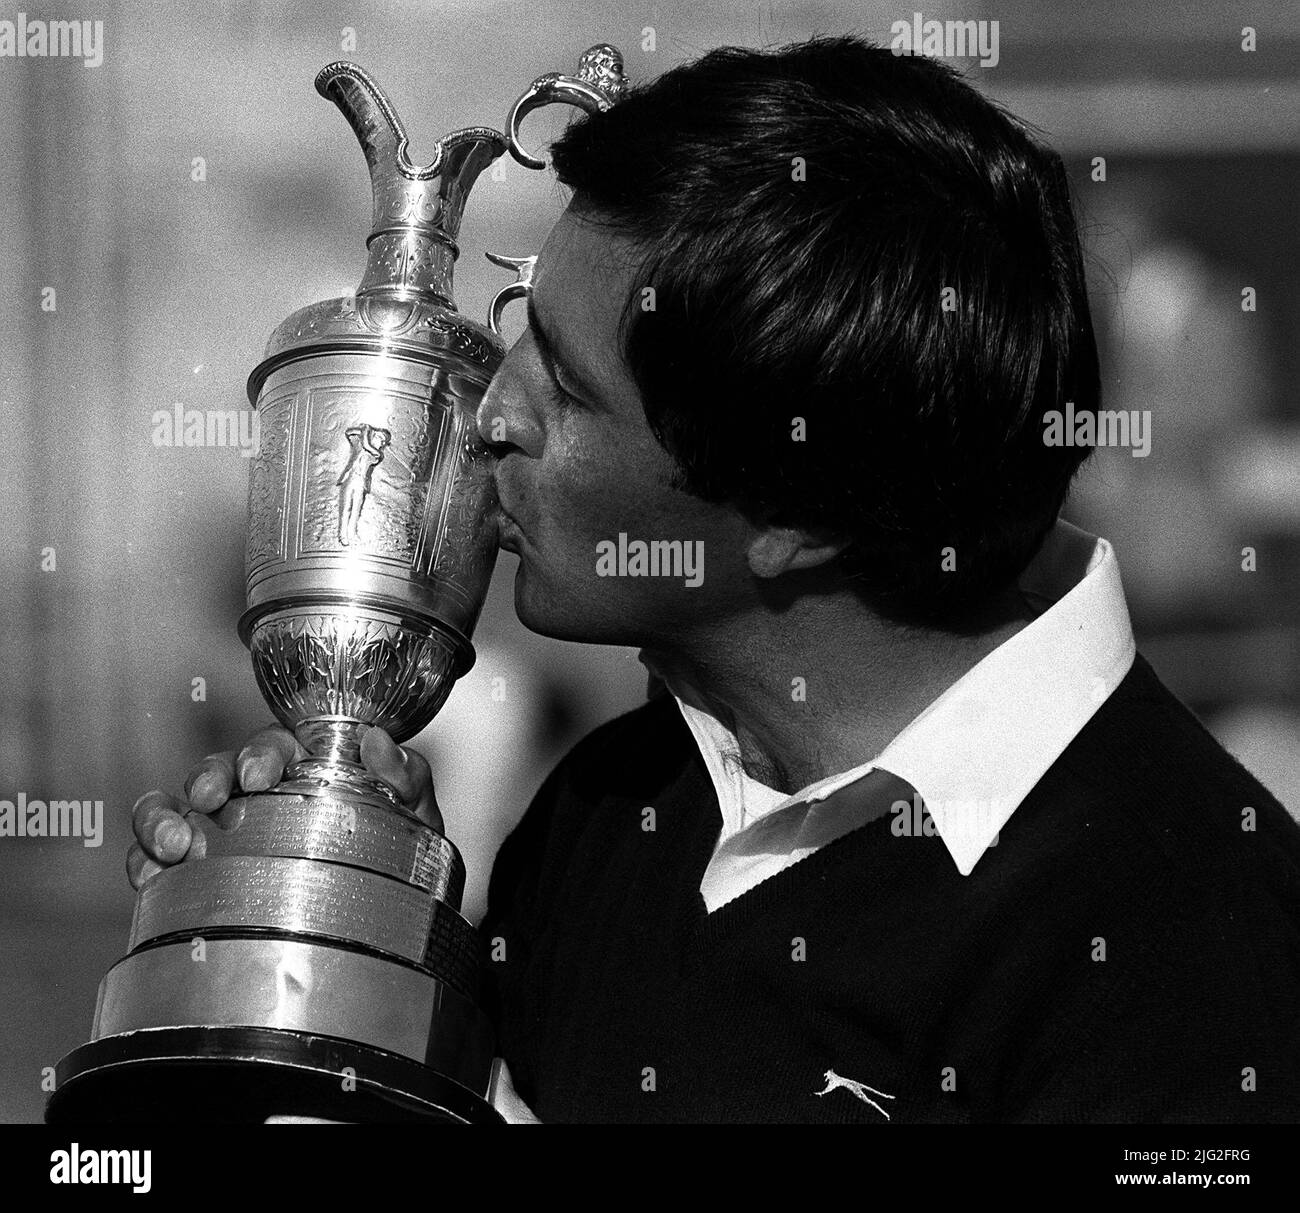 Foto de archivo de fecha 22-07-1984 de Seve Ballesteros de España besa su trofeo Open Golf Championship en St Andrew's, Fife, después de que un putt de birdie le ayudó a terminar el 276, 12 bajo par. Fecha de emisión: Jueves 7 de julio de 2022. Foto de stock